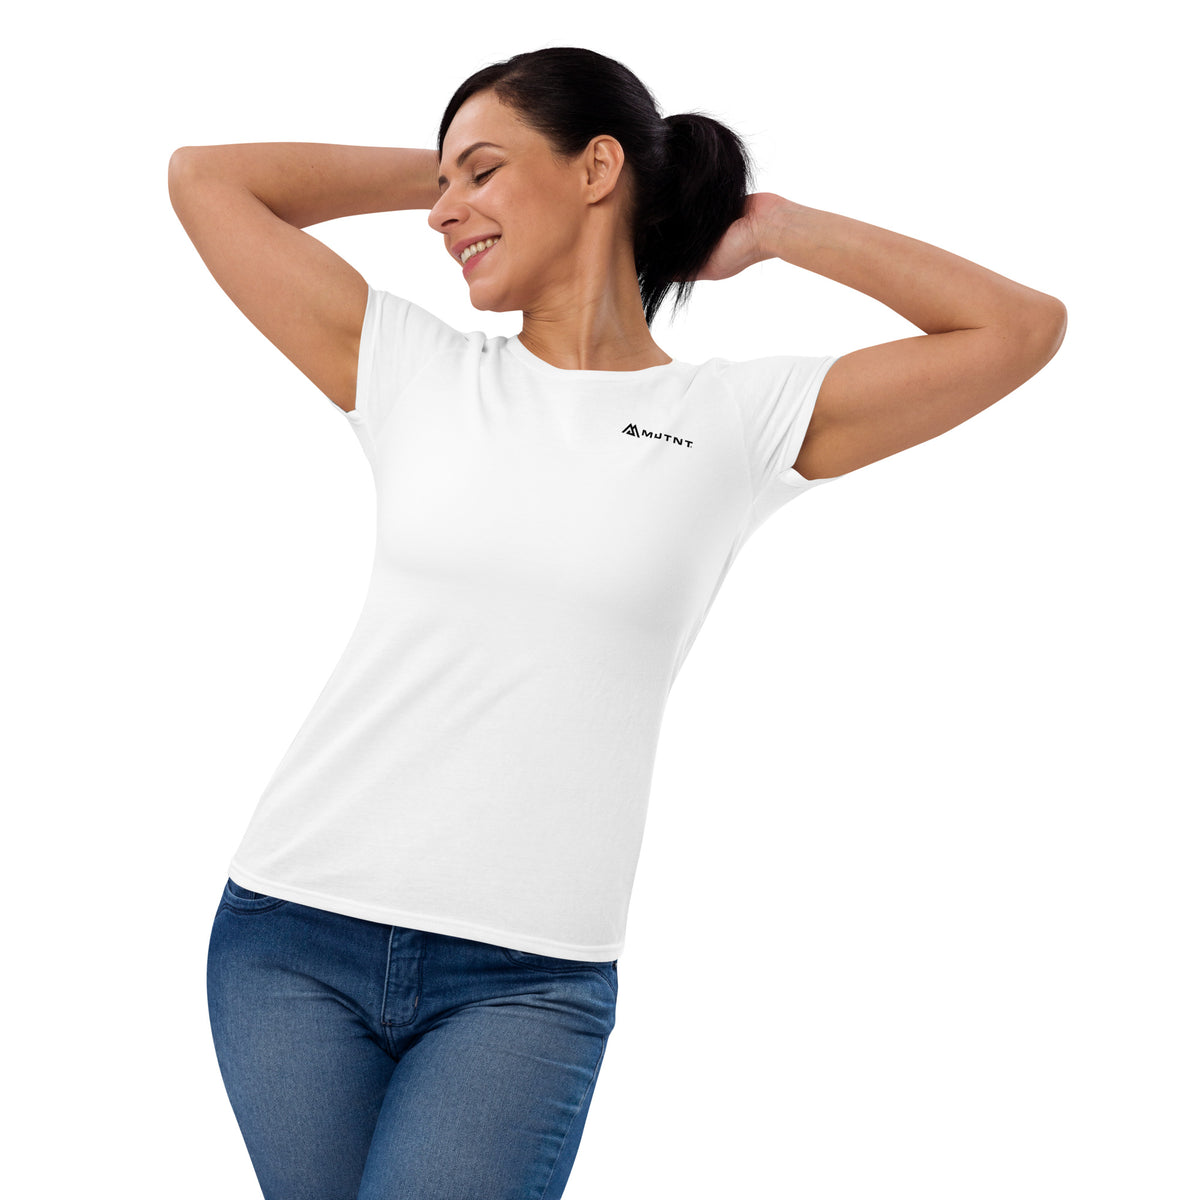 Women&#39;s MUTNT Logo Short Sleeve T-shirt